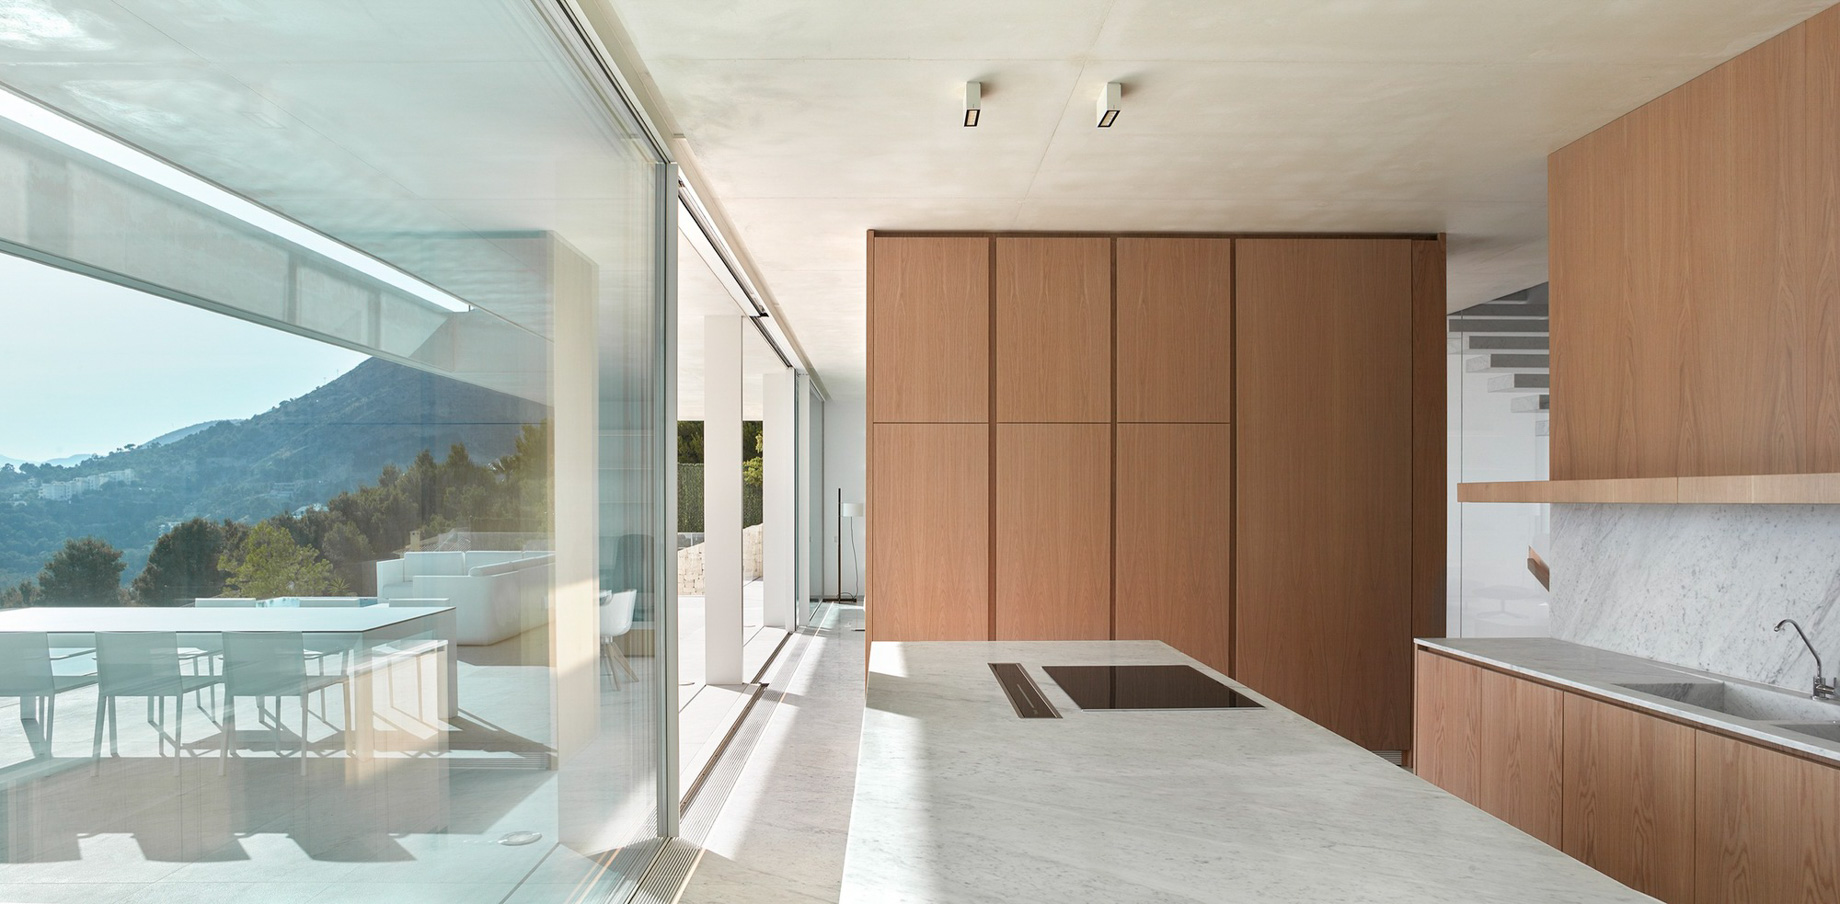 Casa Oslo Modern Contemporary Residence – Alicante, Spain – 11